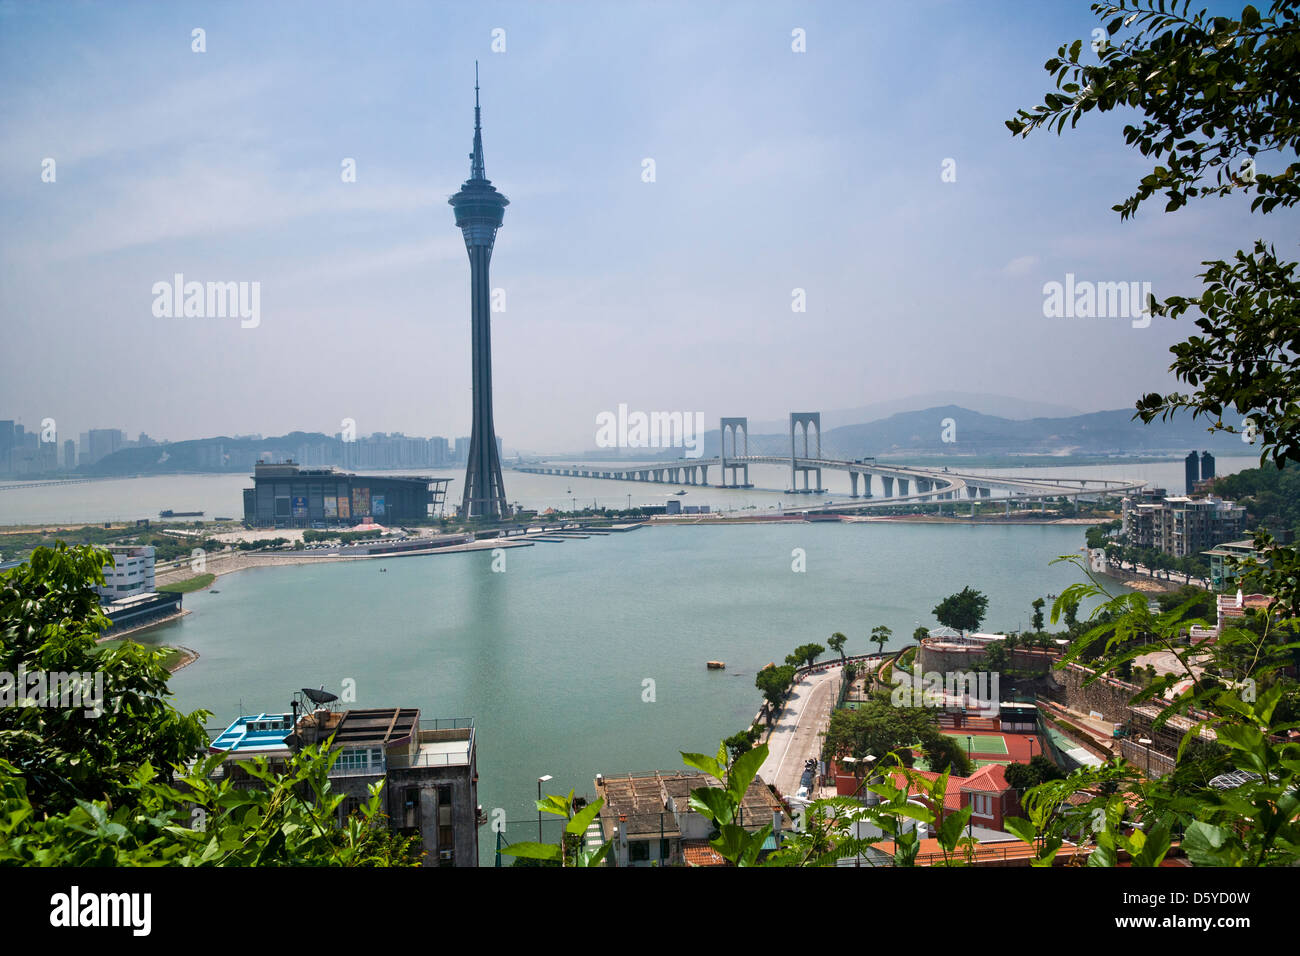 La Chine, Macao, belvédère sur la Colline de Penha avec vue sur le lac de Van Sai, la Tour de Macau et Sai Van Bridge Banque D'Images